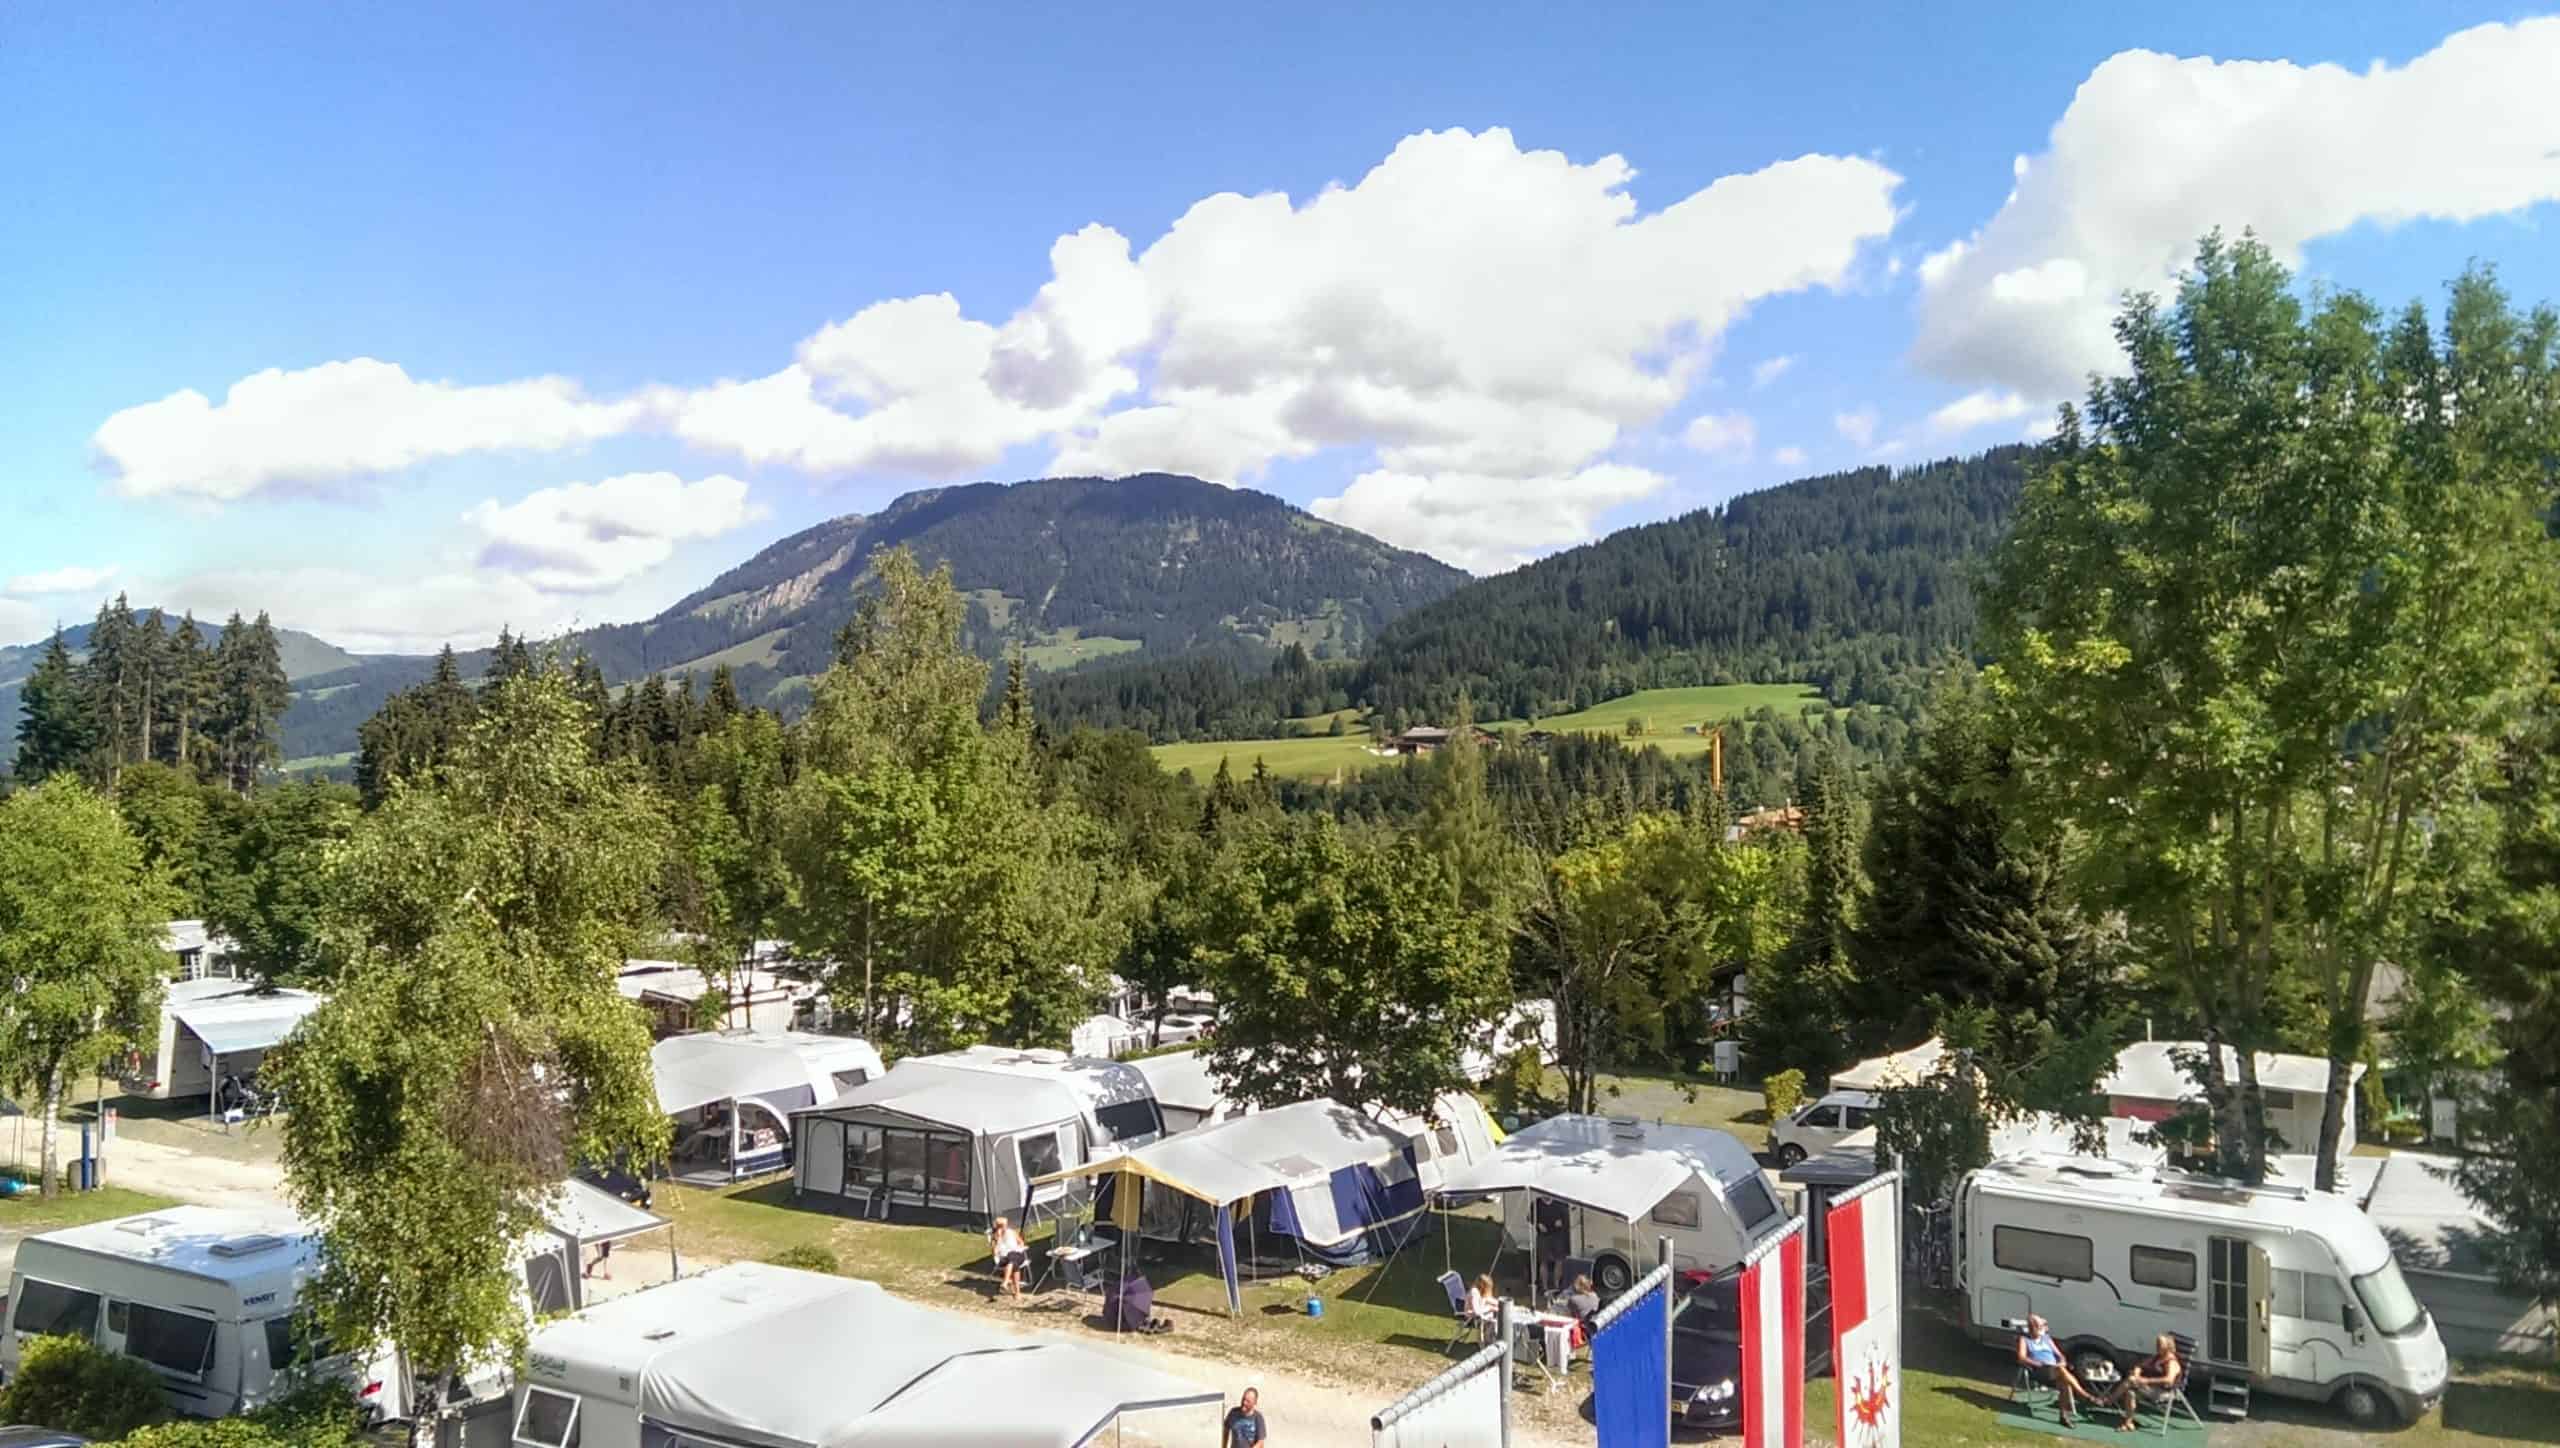 Das Bild zeigt einen Campingplatz in Tirol zwischen Bergen